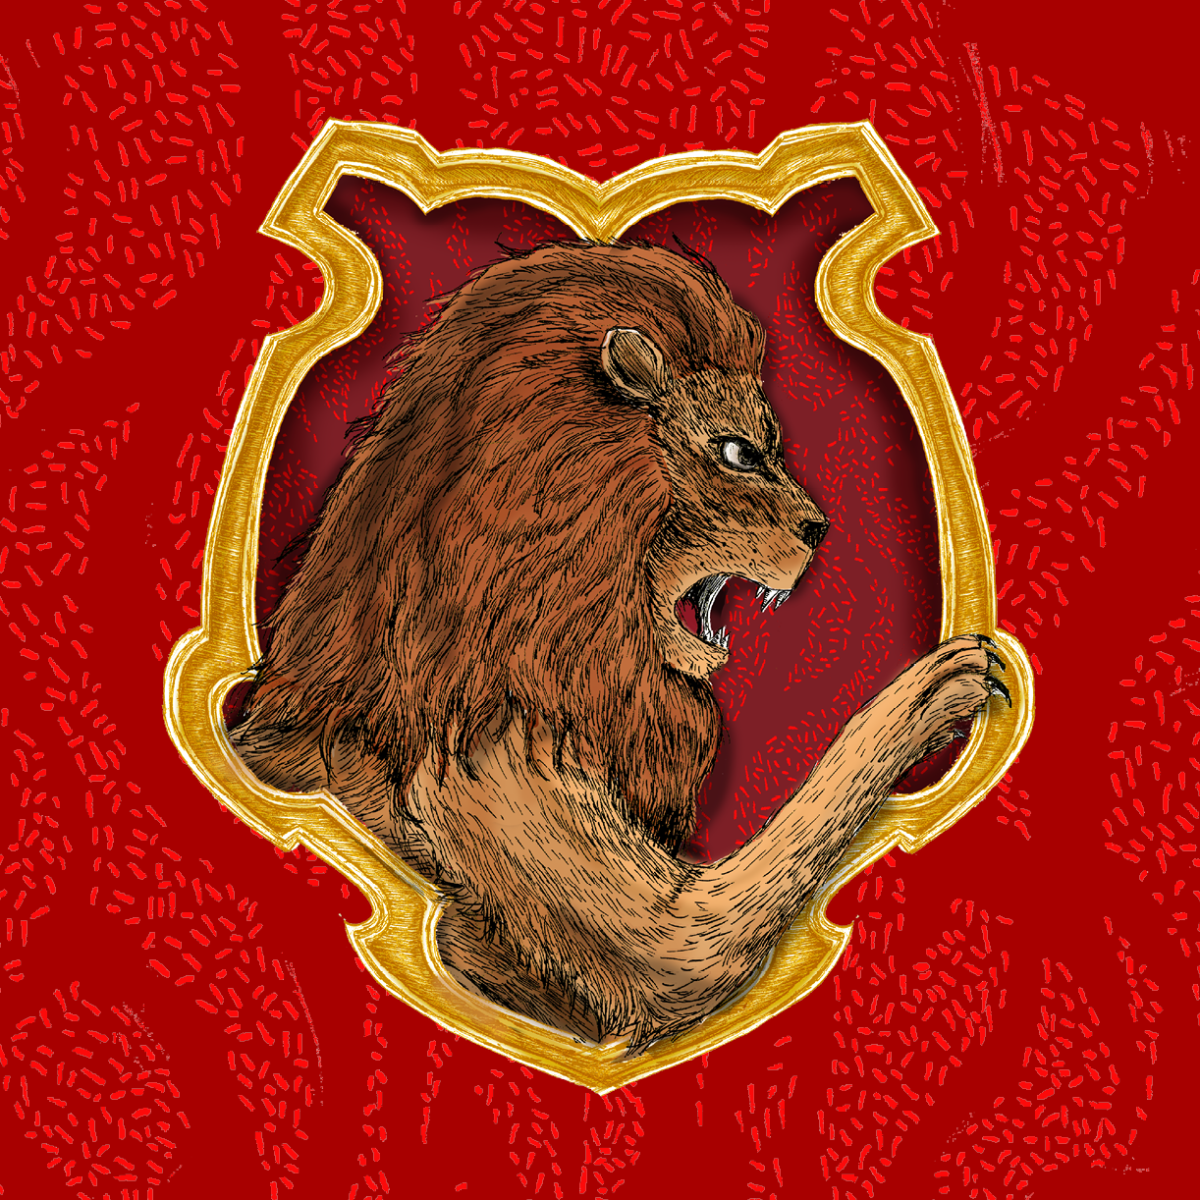 harry potter gryffindor wallpaper,lion,illustration,felidae,big cats,art